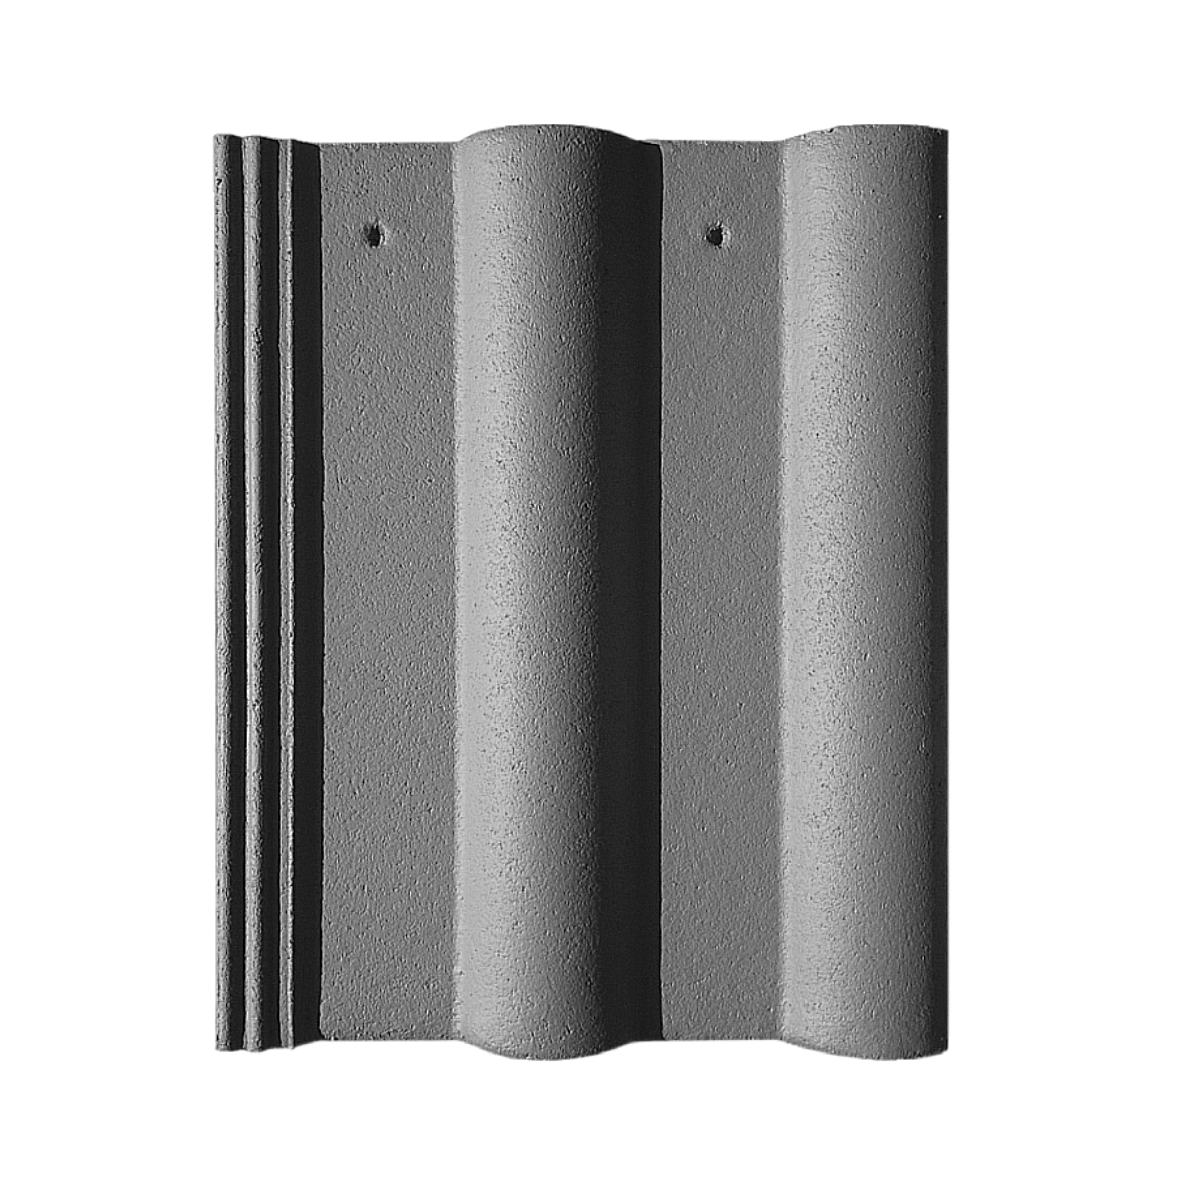 Tigla beton si accesorii - Tigla de beton Nova Double Roman gri antracit 420 x 330 mm, https:maxbau.ro